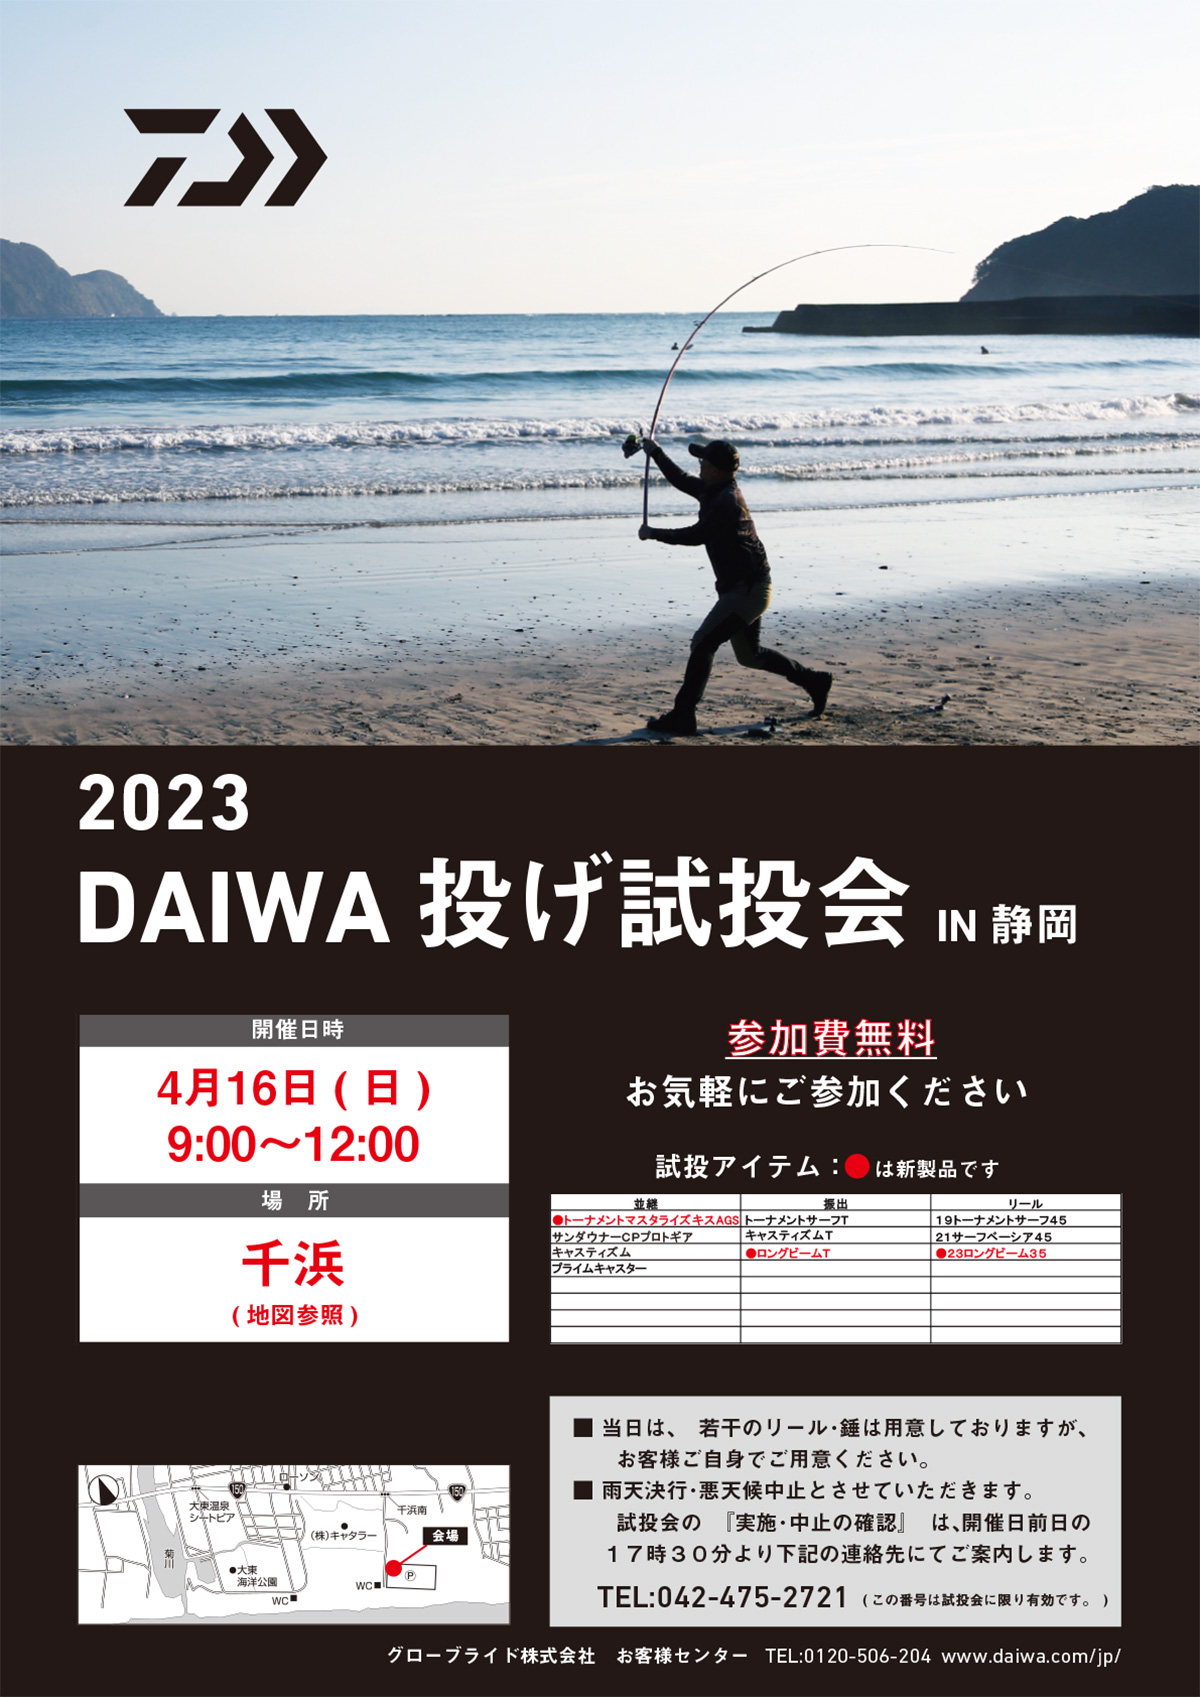 DAIWA 投げ試投会 IN 静岡